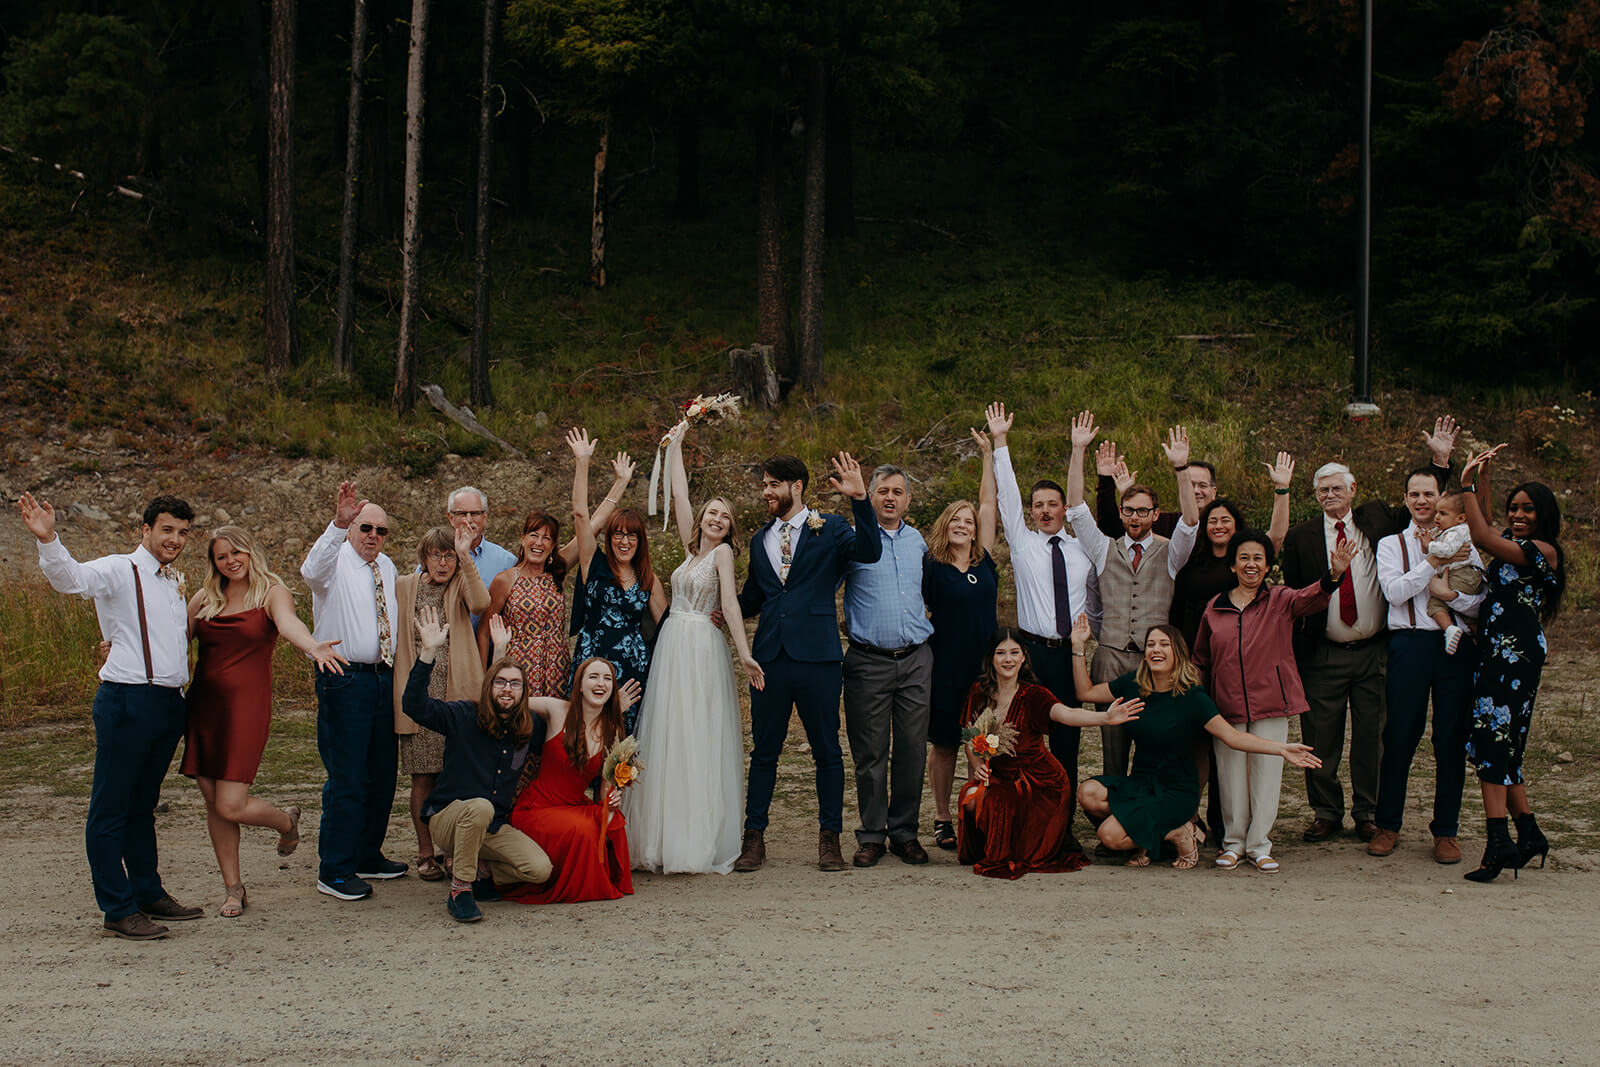 Wedding party portraits at ski resort wedding